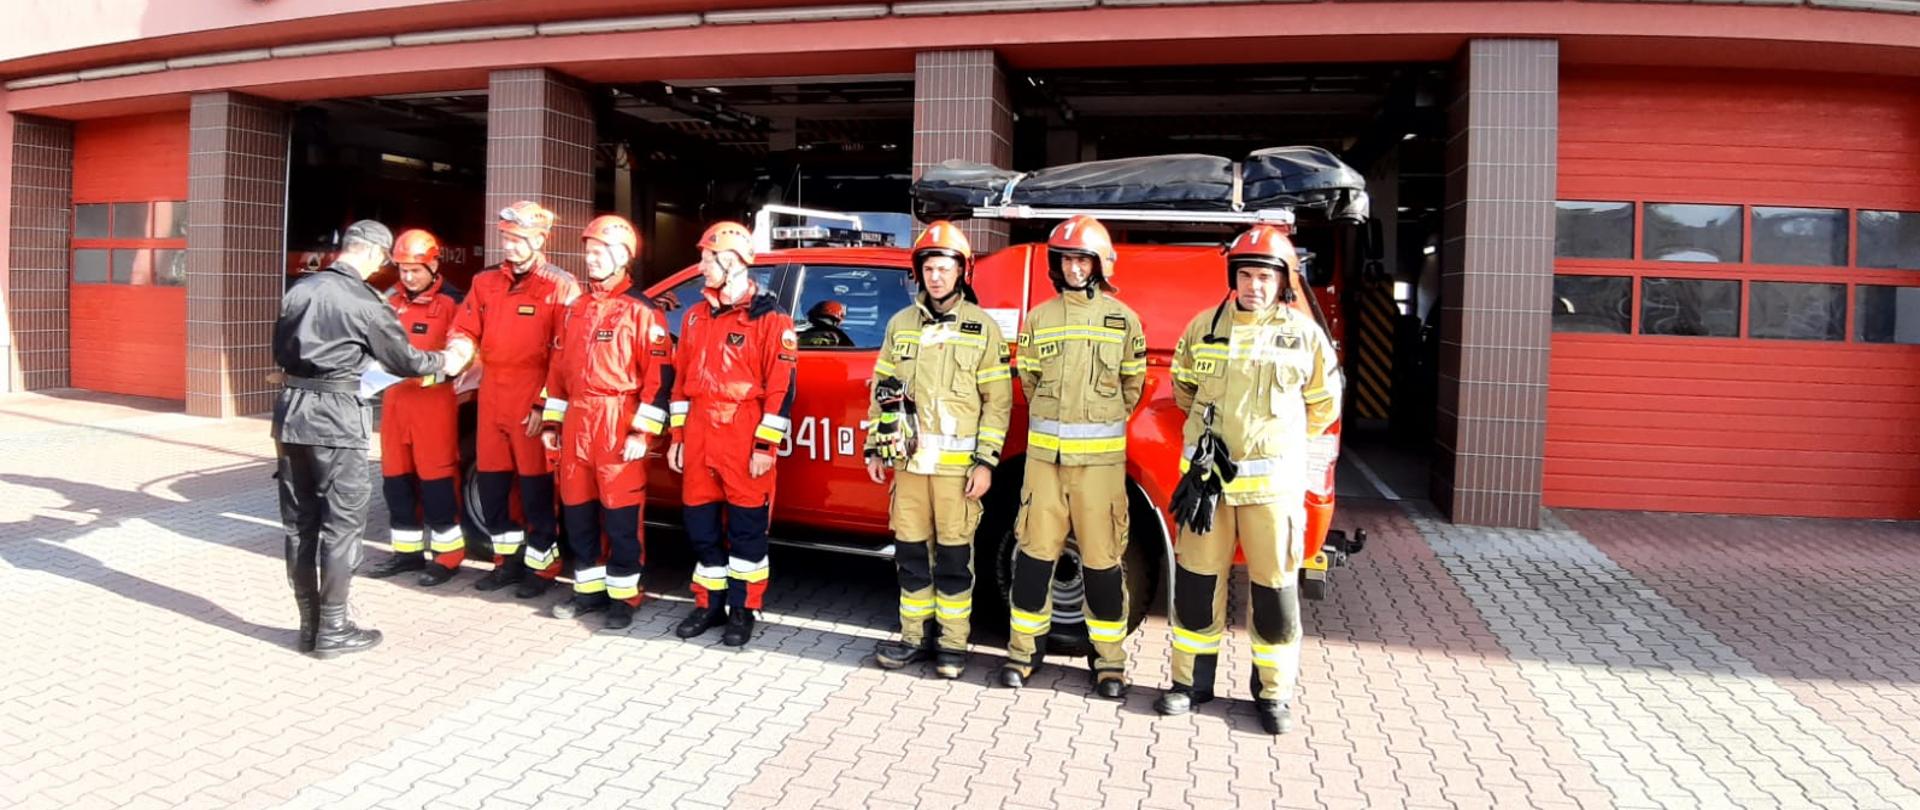 Zdjęcie przedstawia czterech strażaków ubranych w czerwone kombinezony ratownicze, na głowie czerwone kaski którzy odbierają nagrody od zastępcy dowódcy JRG1 w Kaliszu. Dowódca obrócony plecami do kadru, ubrany w mundur strażacki koloru czarnego, czapka strażacka na głowie,, na brzuchu zaciśnięty pas strażacki. Obok strażaków odbierających nagrody widzimy trzech strażaków stojących w rzędzie, mających na sobie ubranie specjalistyczne koloru piaskowego, na głowach czerwone chełmy z cyfrą jeden na przodzie. W tle widzimy samochód strażacki marki Ford, koloru czerwonego,. Na dachu samochodu czarny pokrowiec na sprzęt specjalistyczny. Dalej w tle widzimy otwarte wrota wyjazdowe JRG1 oraz część napisu " Państwowa Straż Pożarna JRG-1".. 